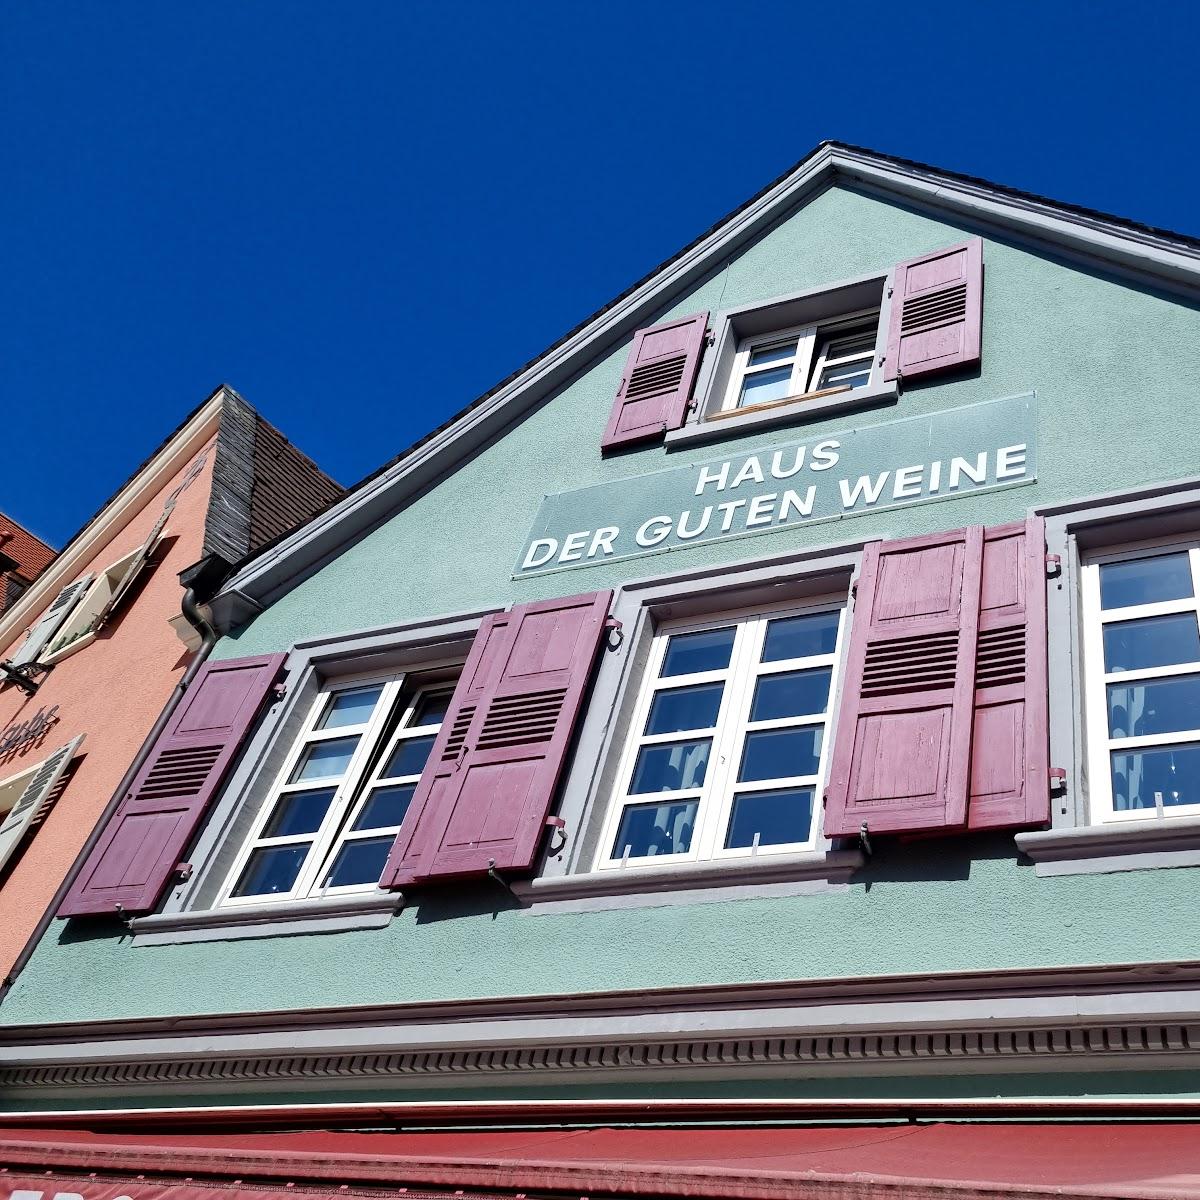 Restaurant "Michlers Haus der Guten Weine" in Bad Dürkheim